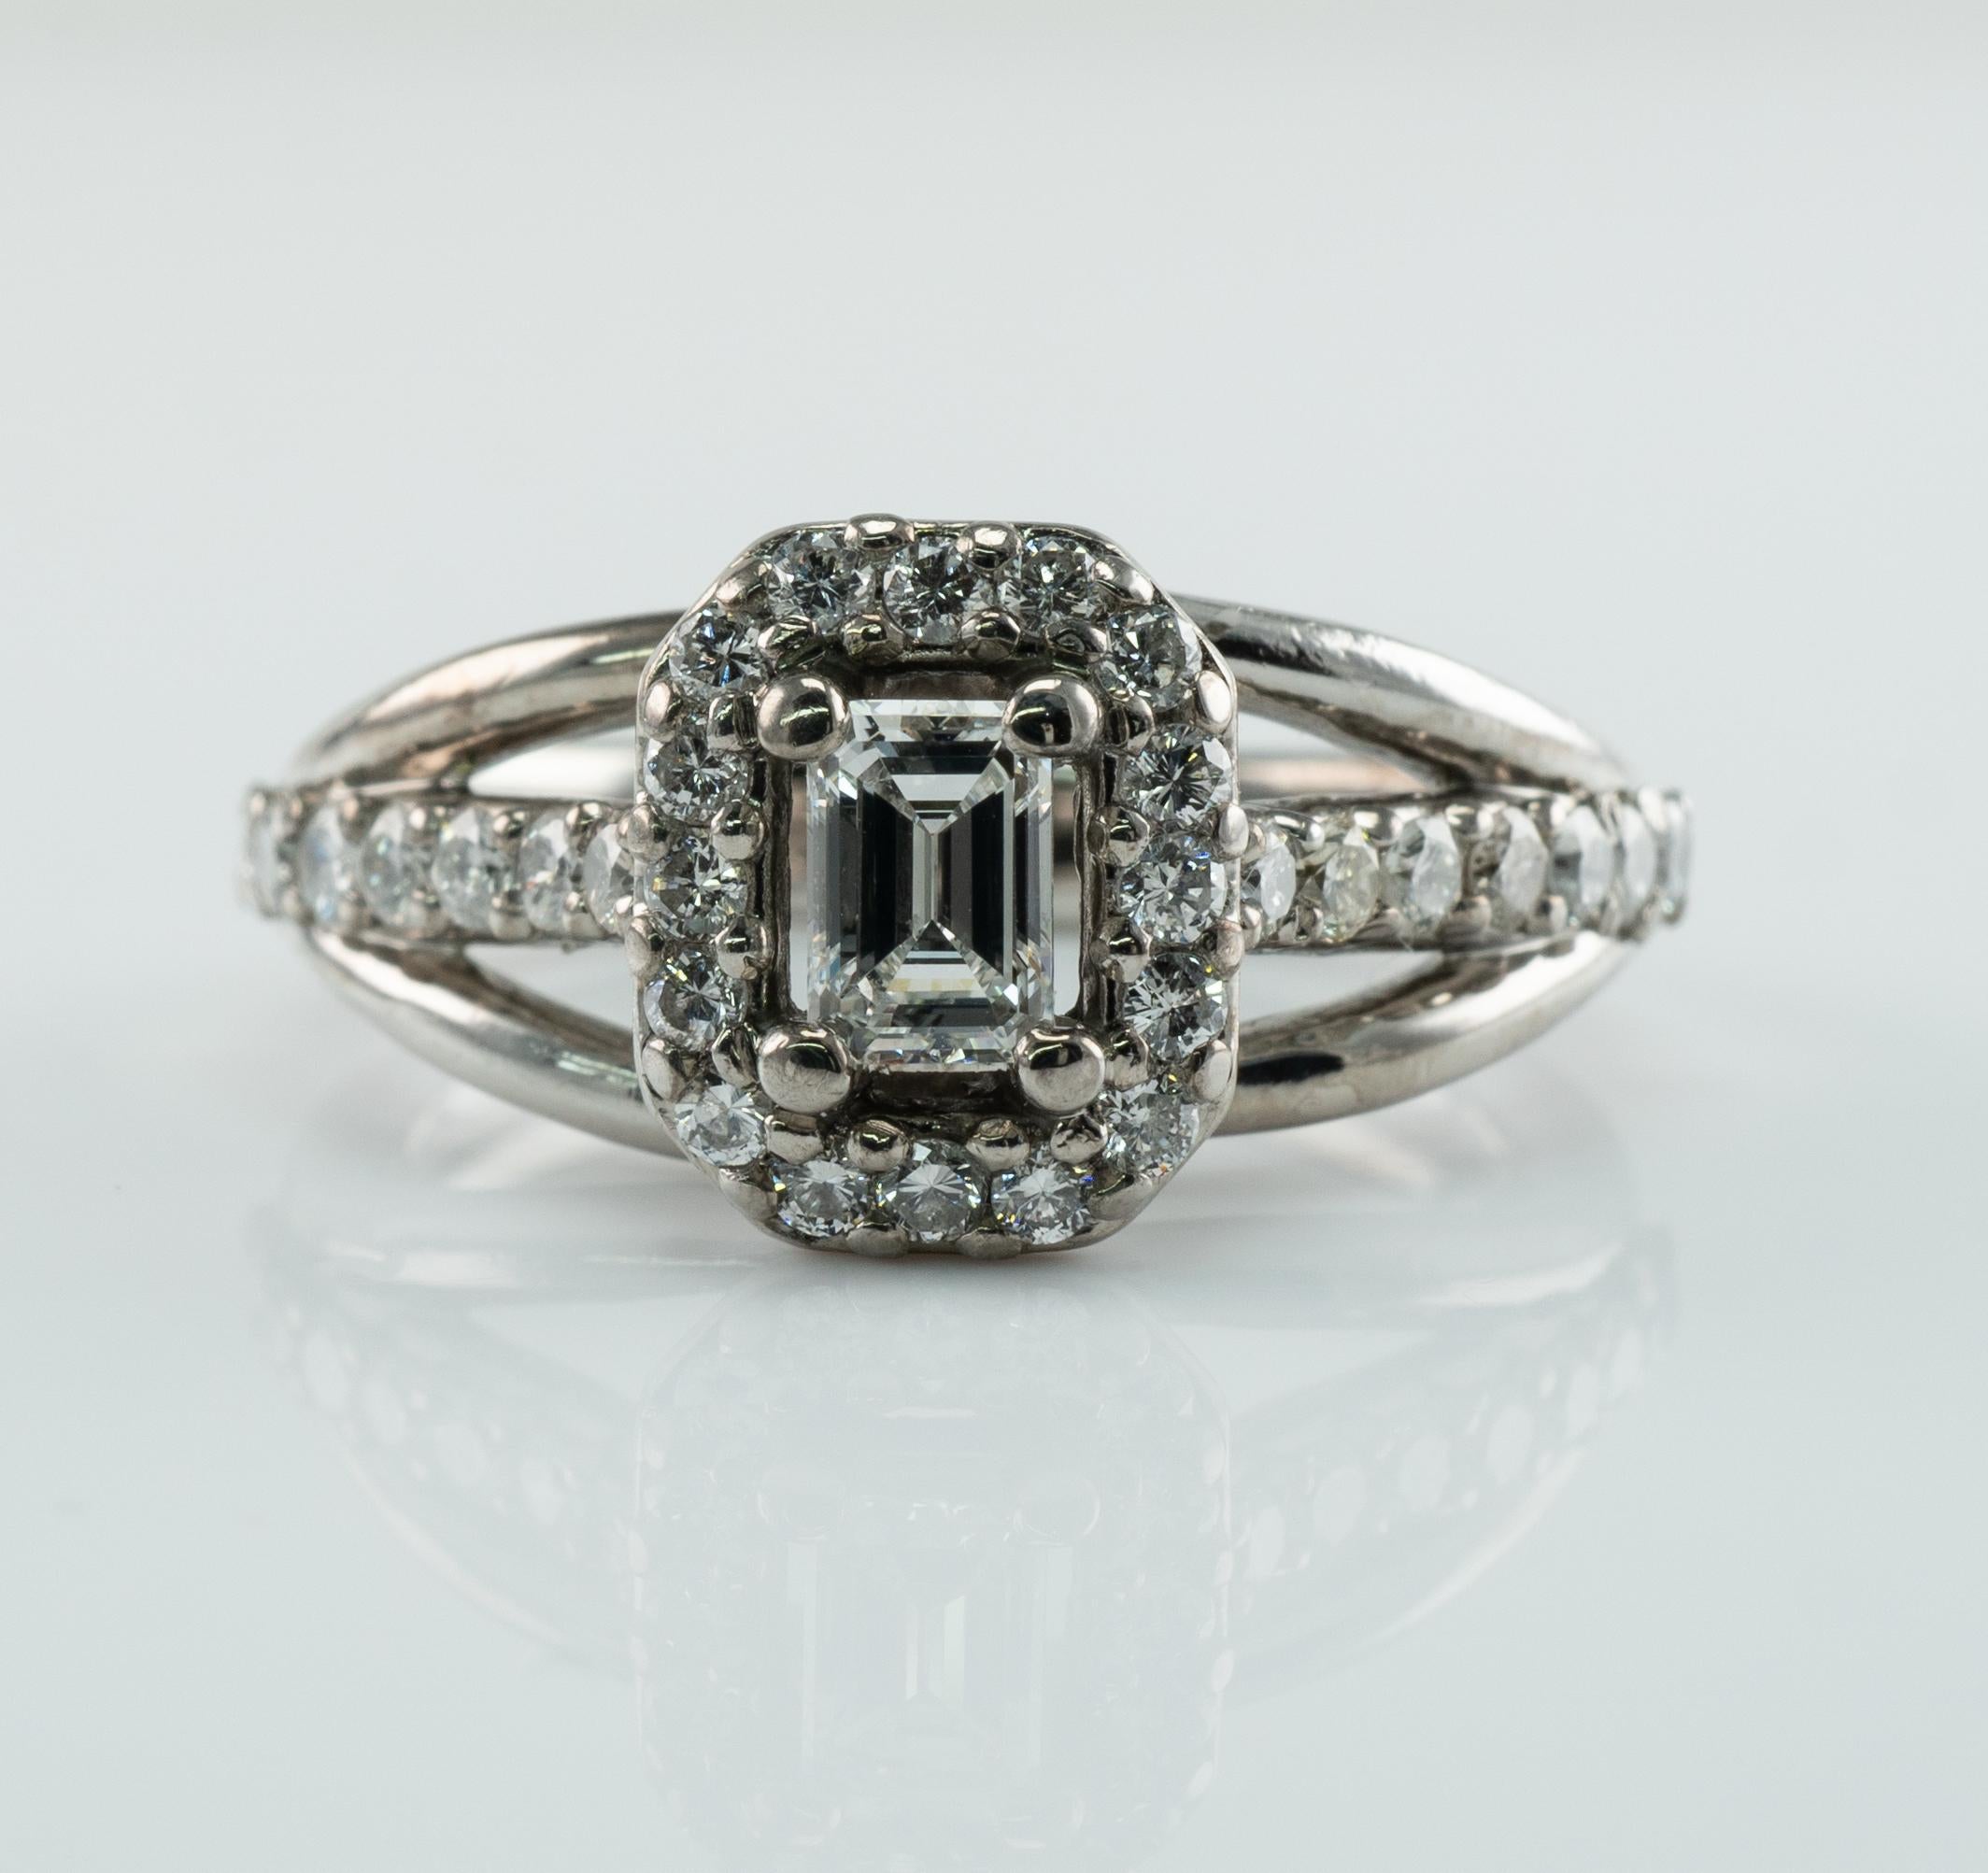 Cette bague de propriété ferait une merveilleuse bague de fiançailles ou de mariage. 
Le diamant central, de taille émeraude, fait 0,23 carat, est de pureté VVS2 et de couleur G.
30 diamants de taille ronde de pureté SI1-SI2 et de couleur H.
Le